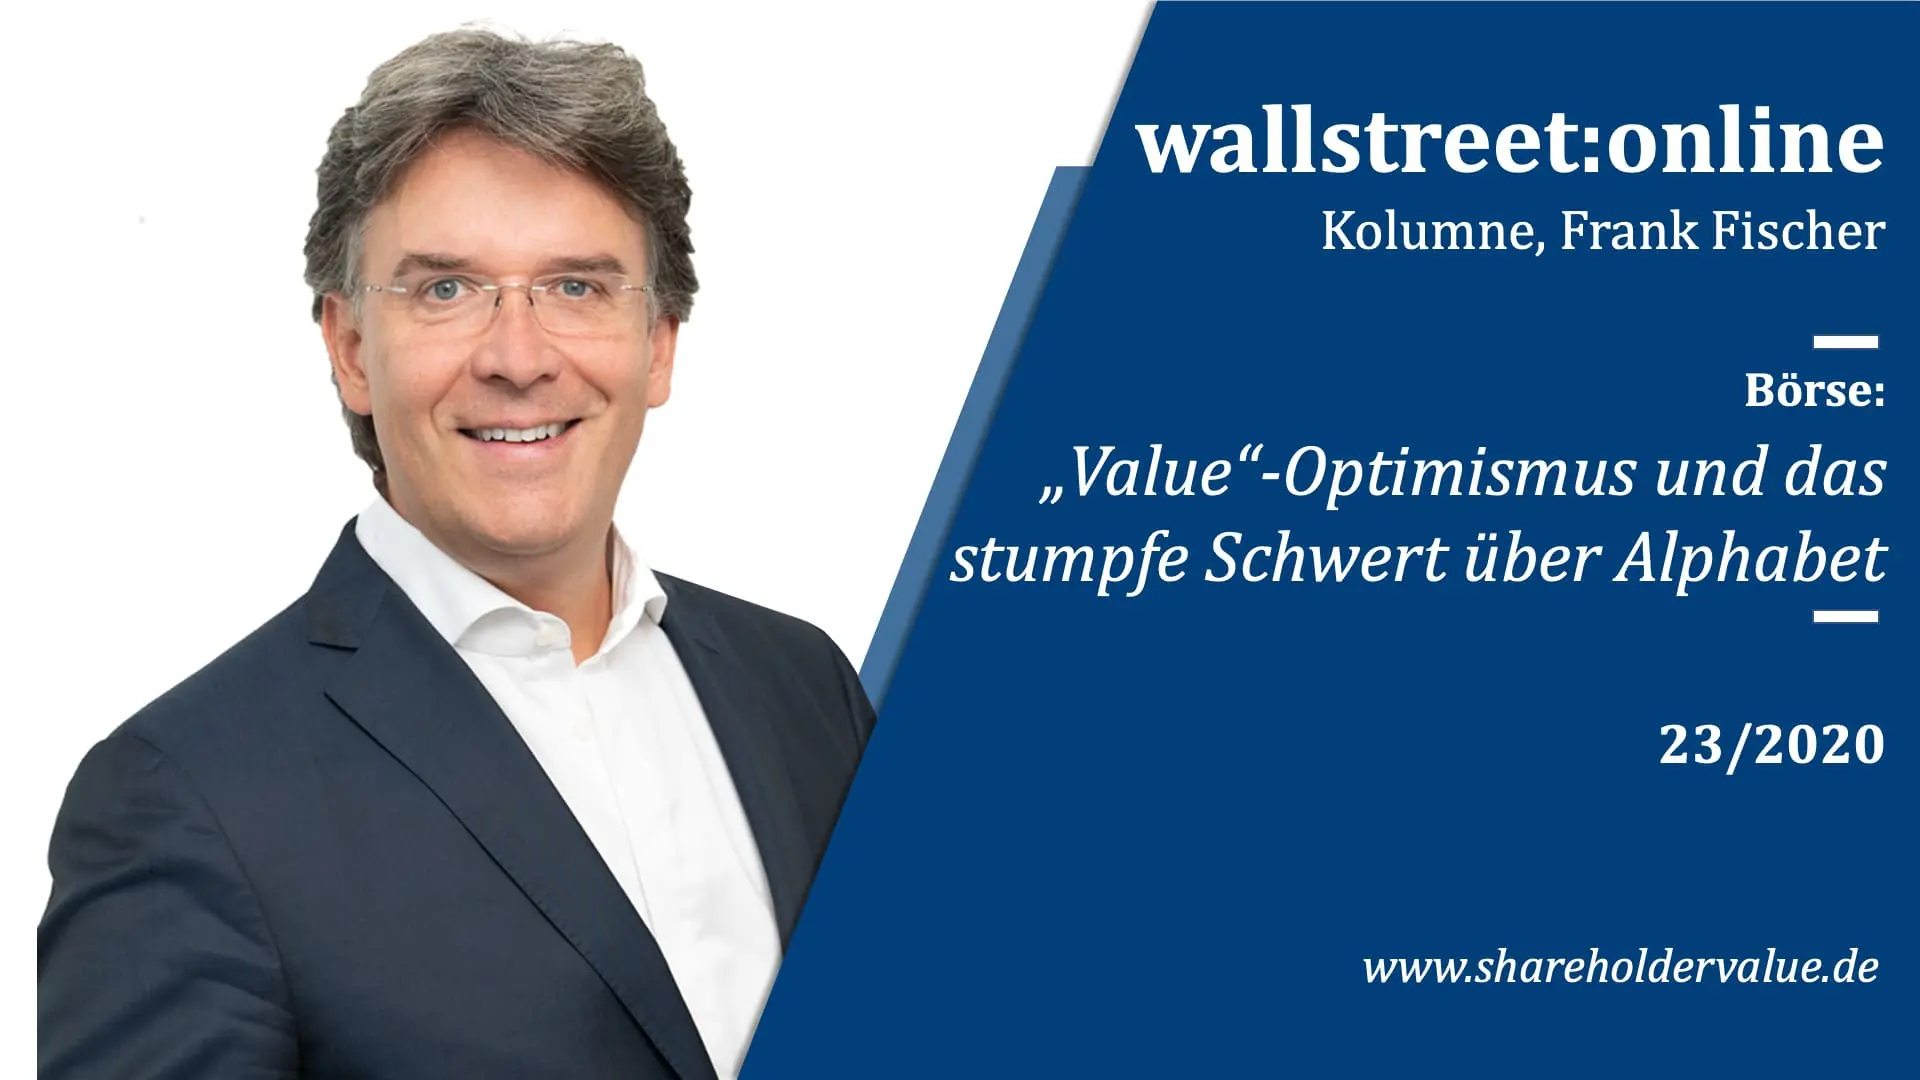 Value_Optimismus_Frank_Fischer_Kolumne